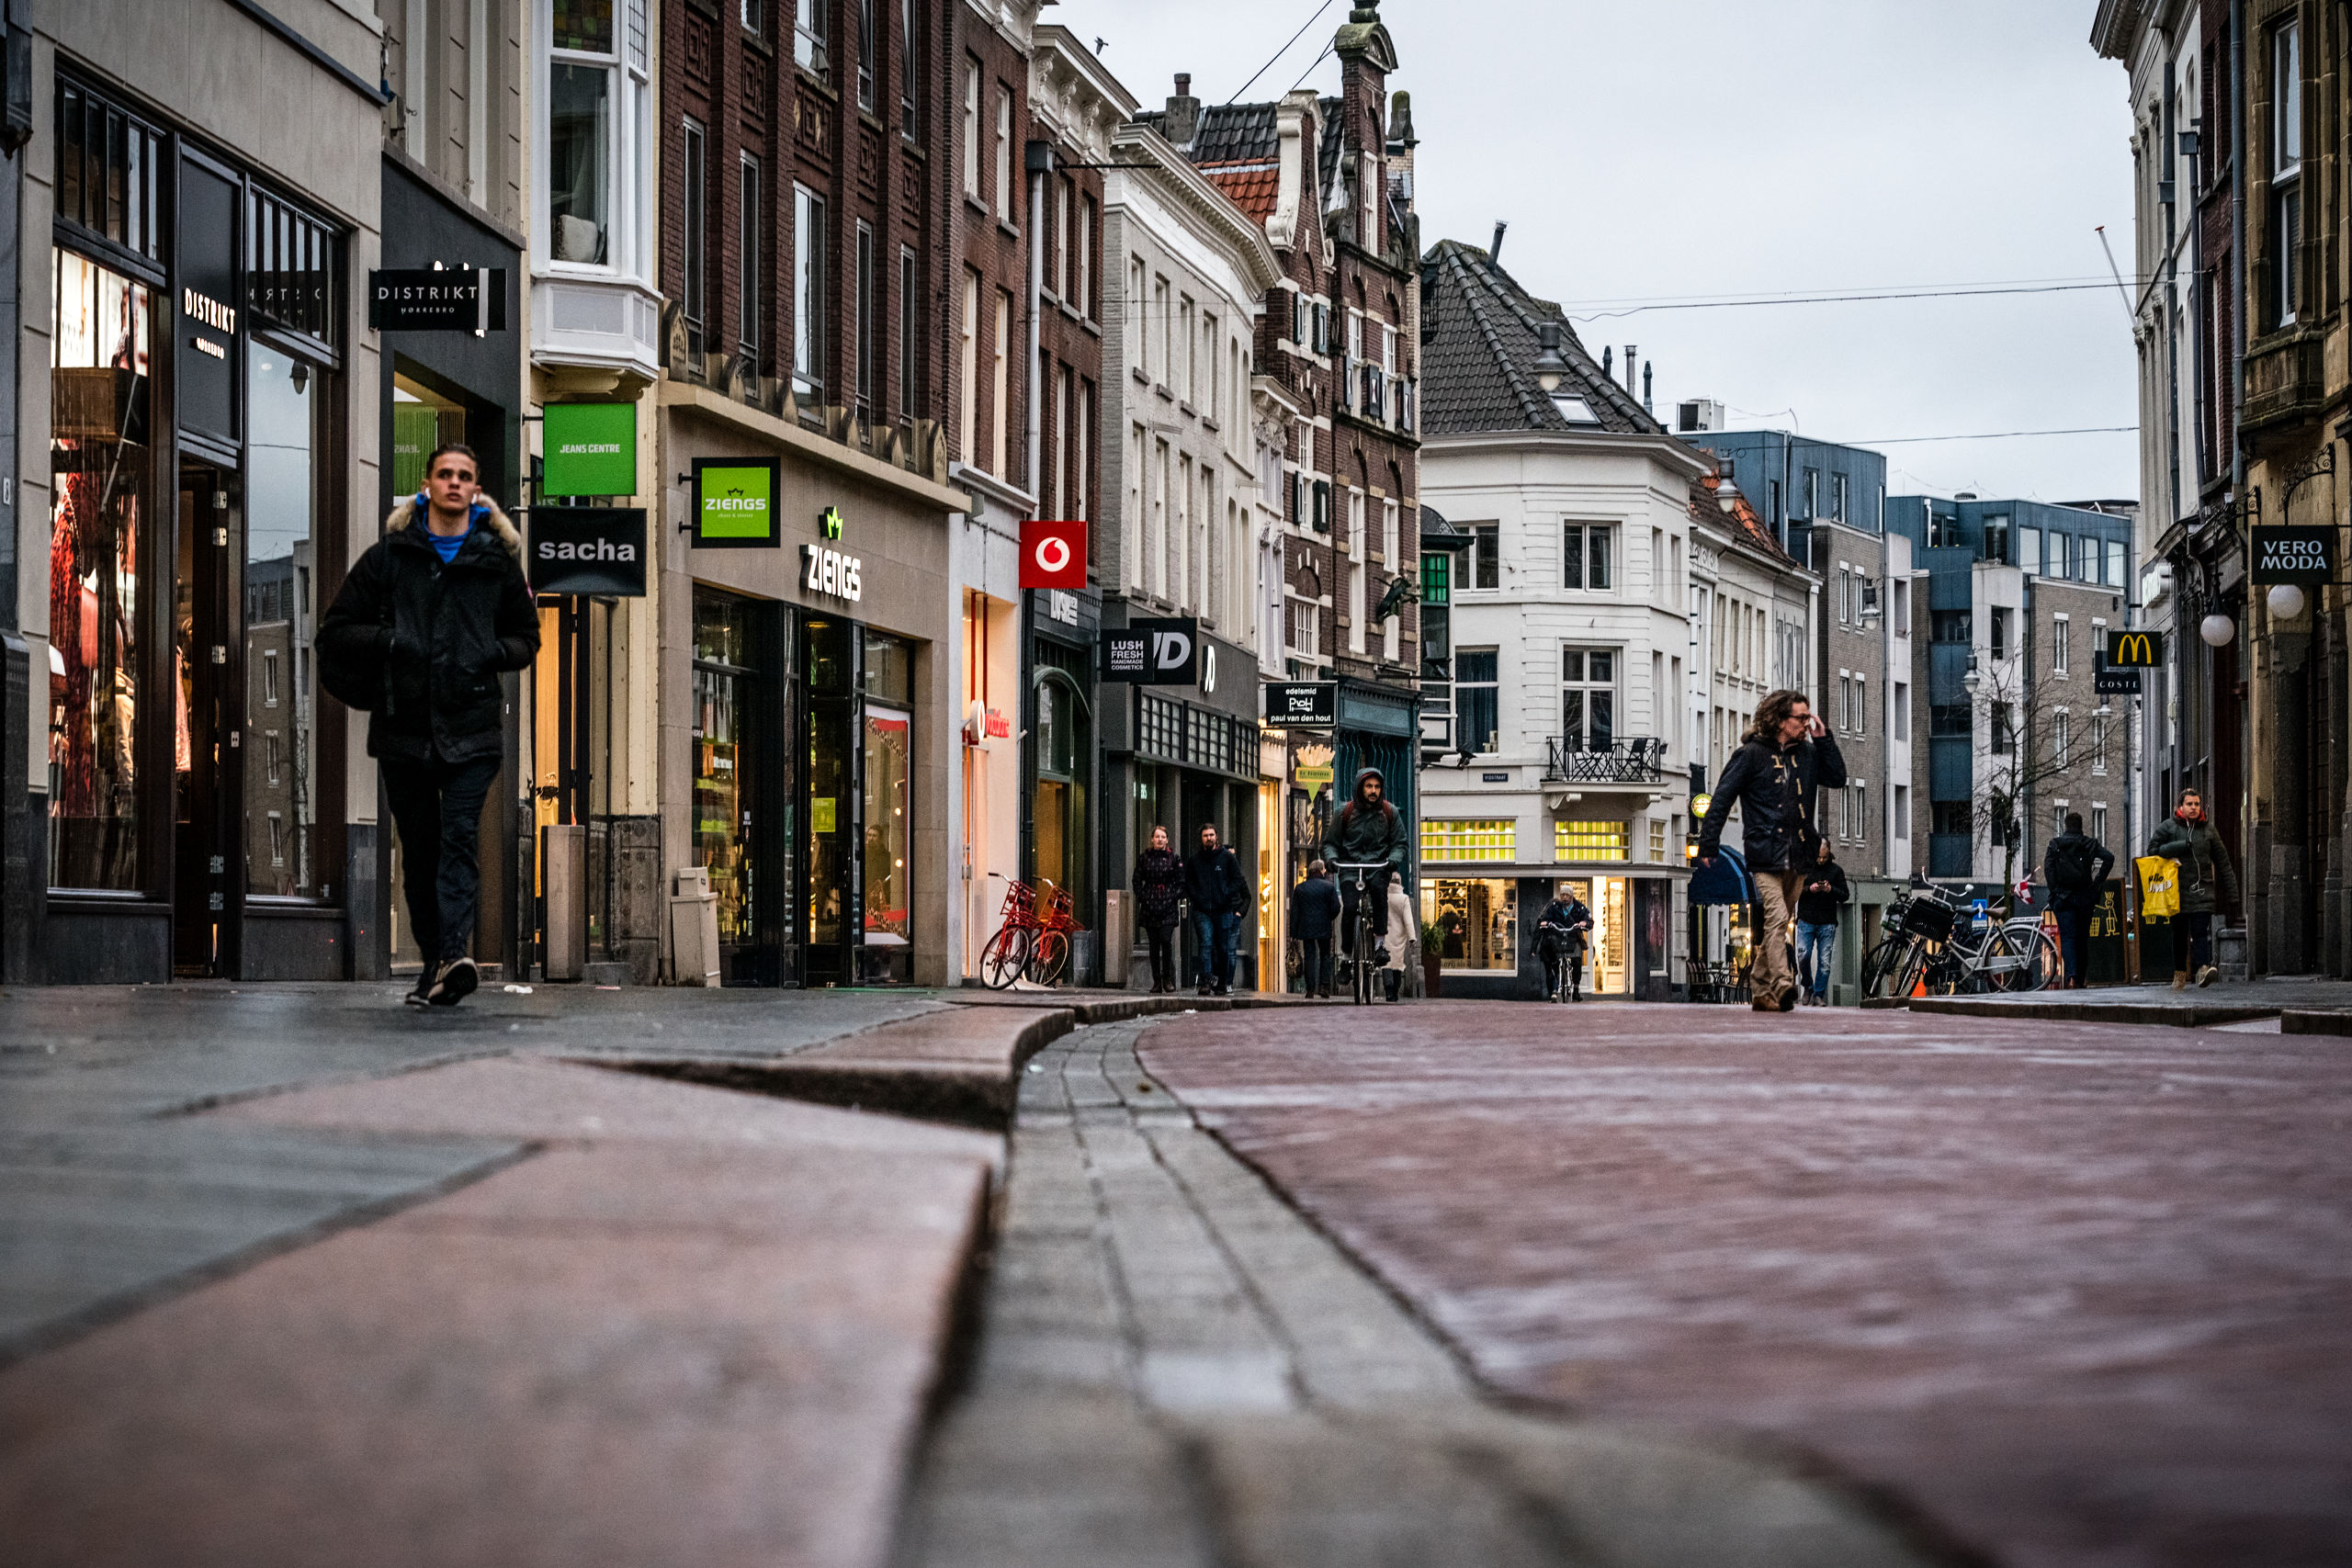 Winkelstraten in de binnenstad van Den Bosch 